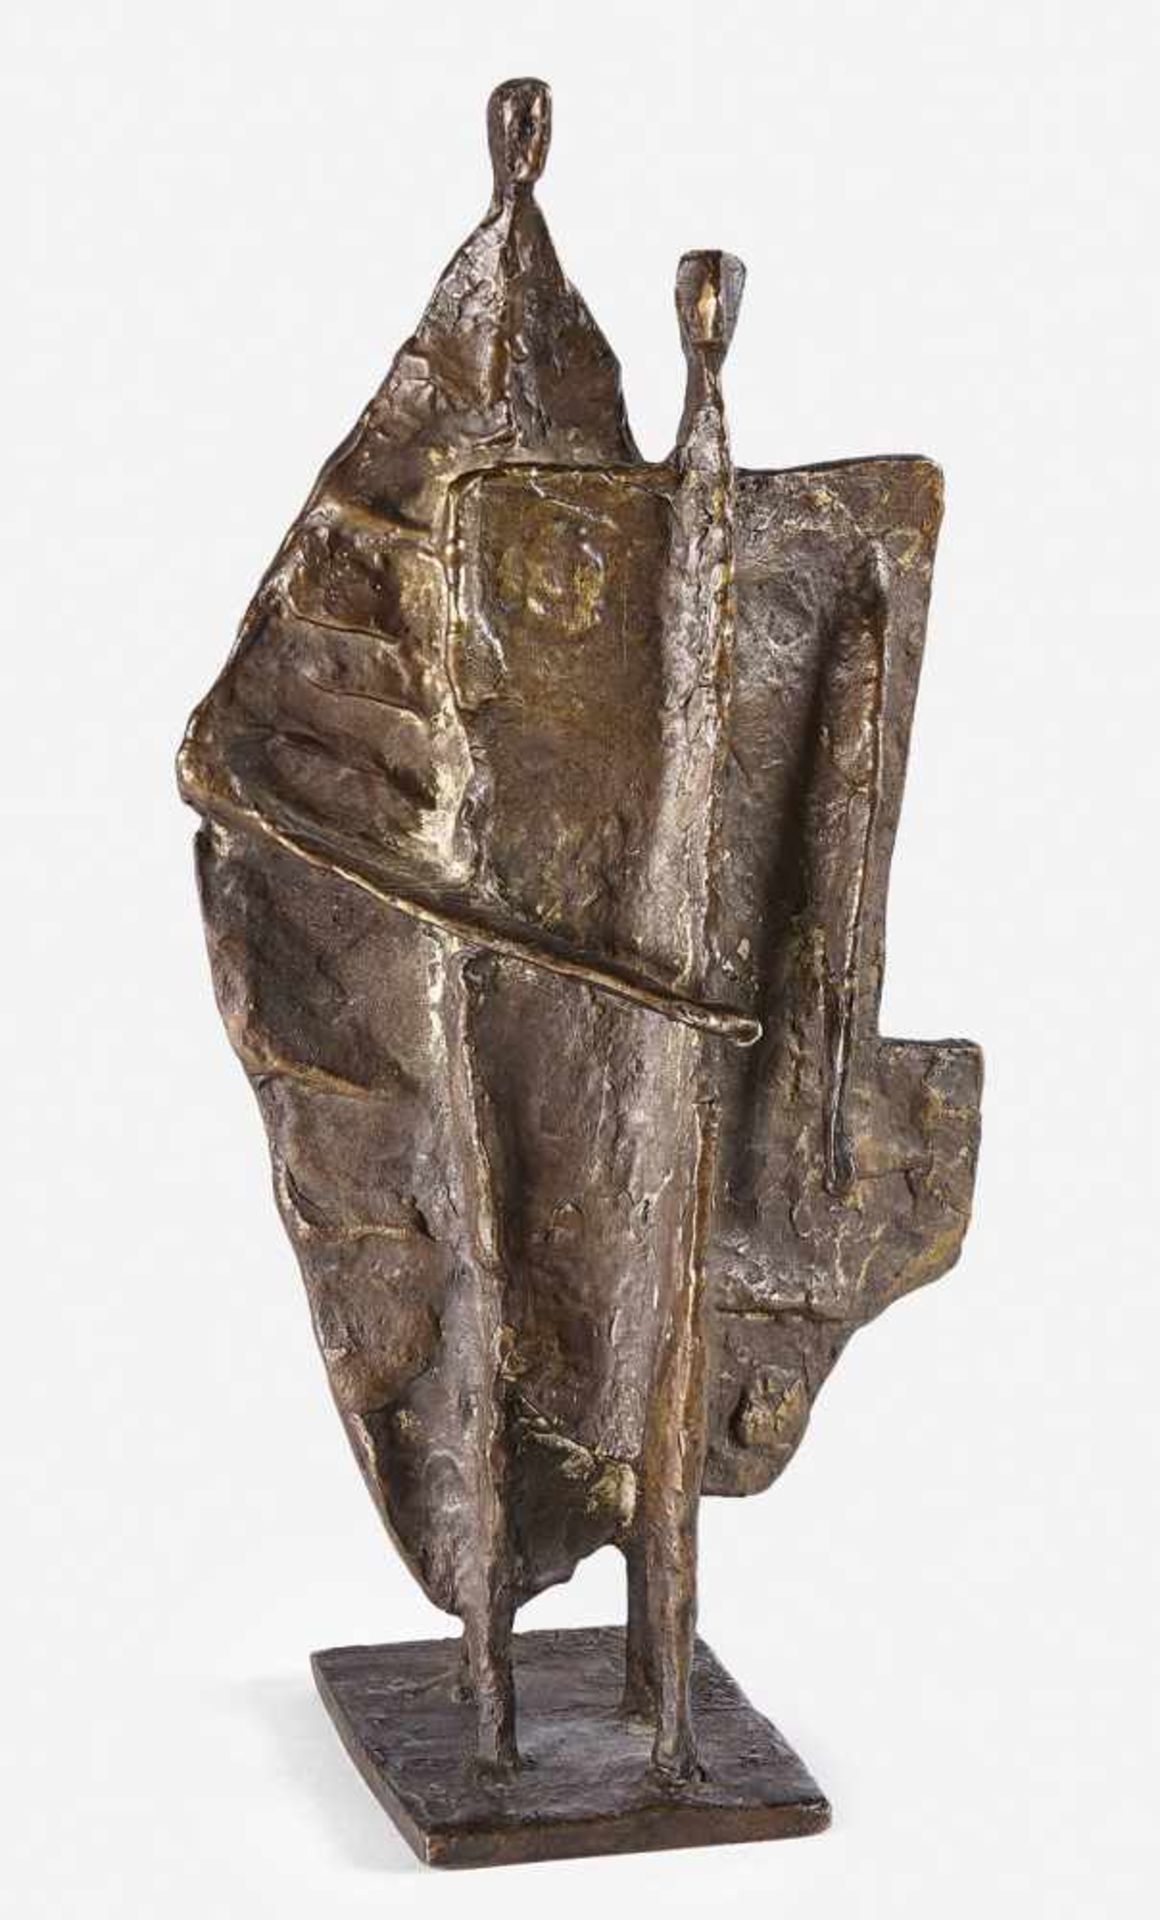 Bechteler, Theo: Figurengruppe (Paar)Figurengruppe (Paar) Bronze mit goldbrauner Patina. 1977. 26,